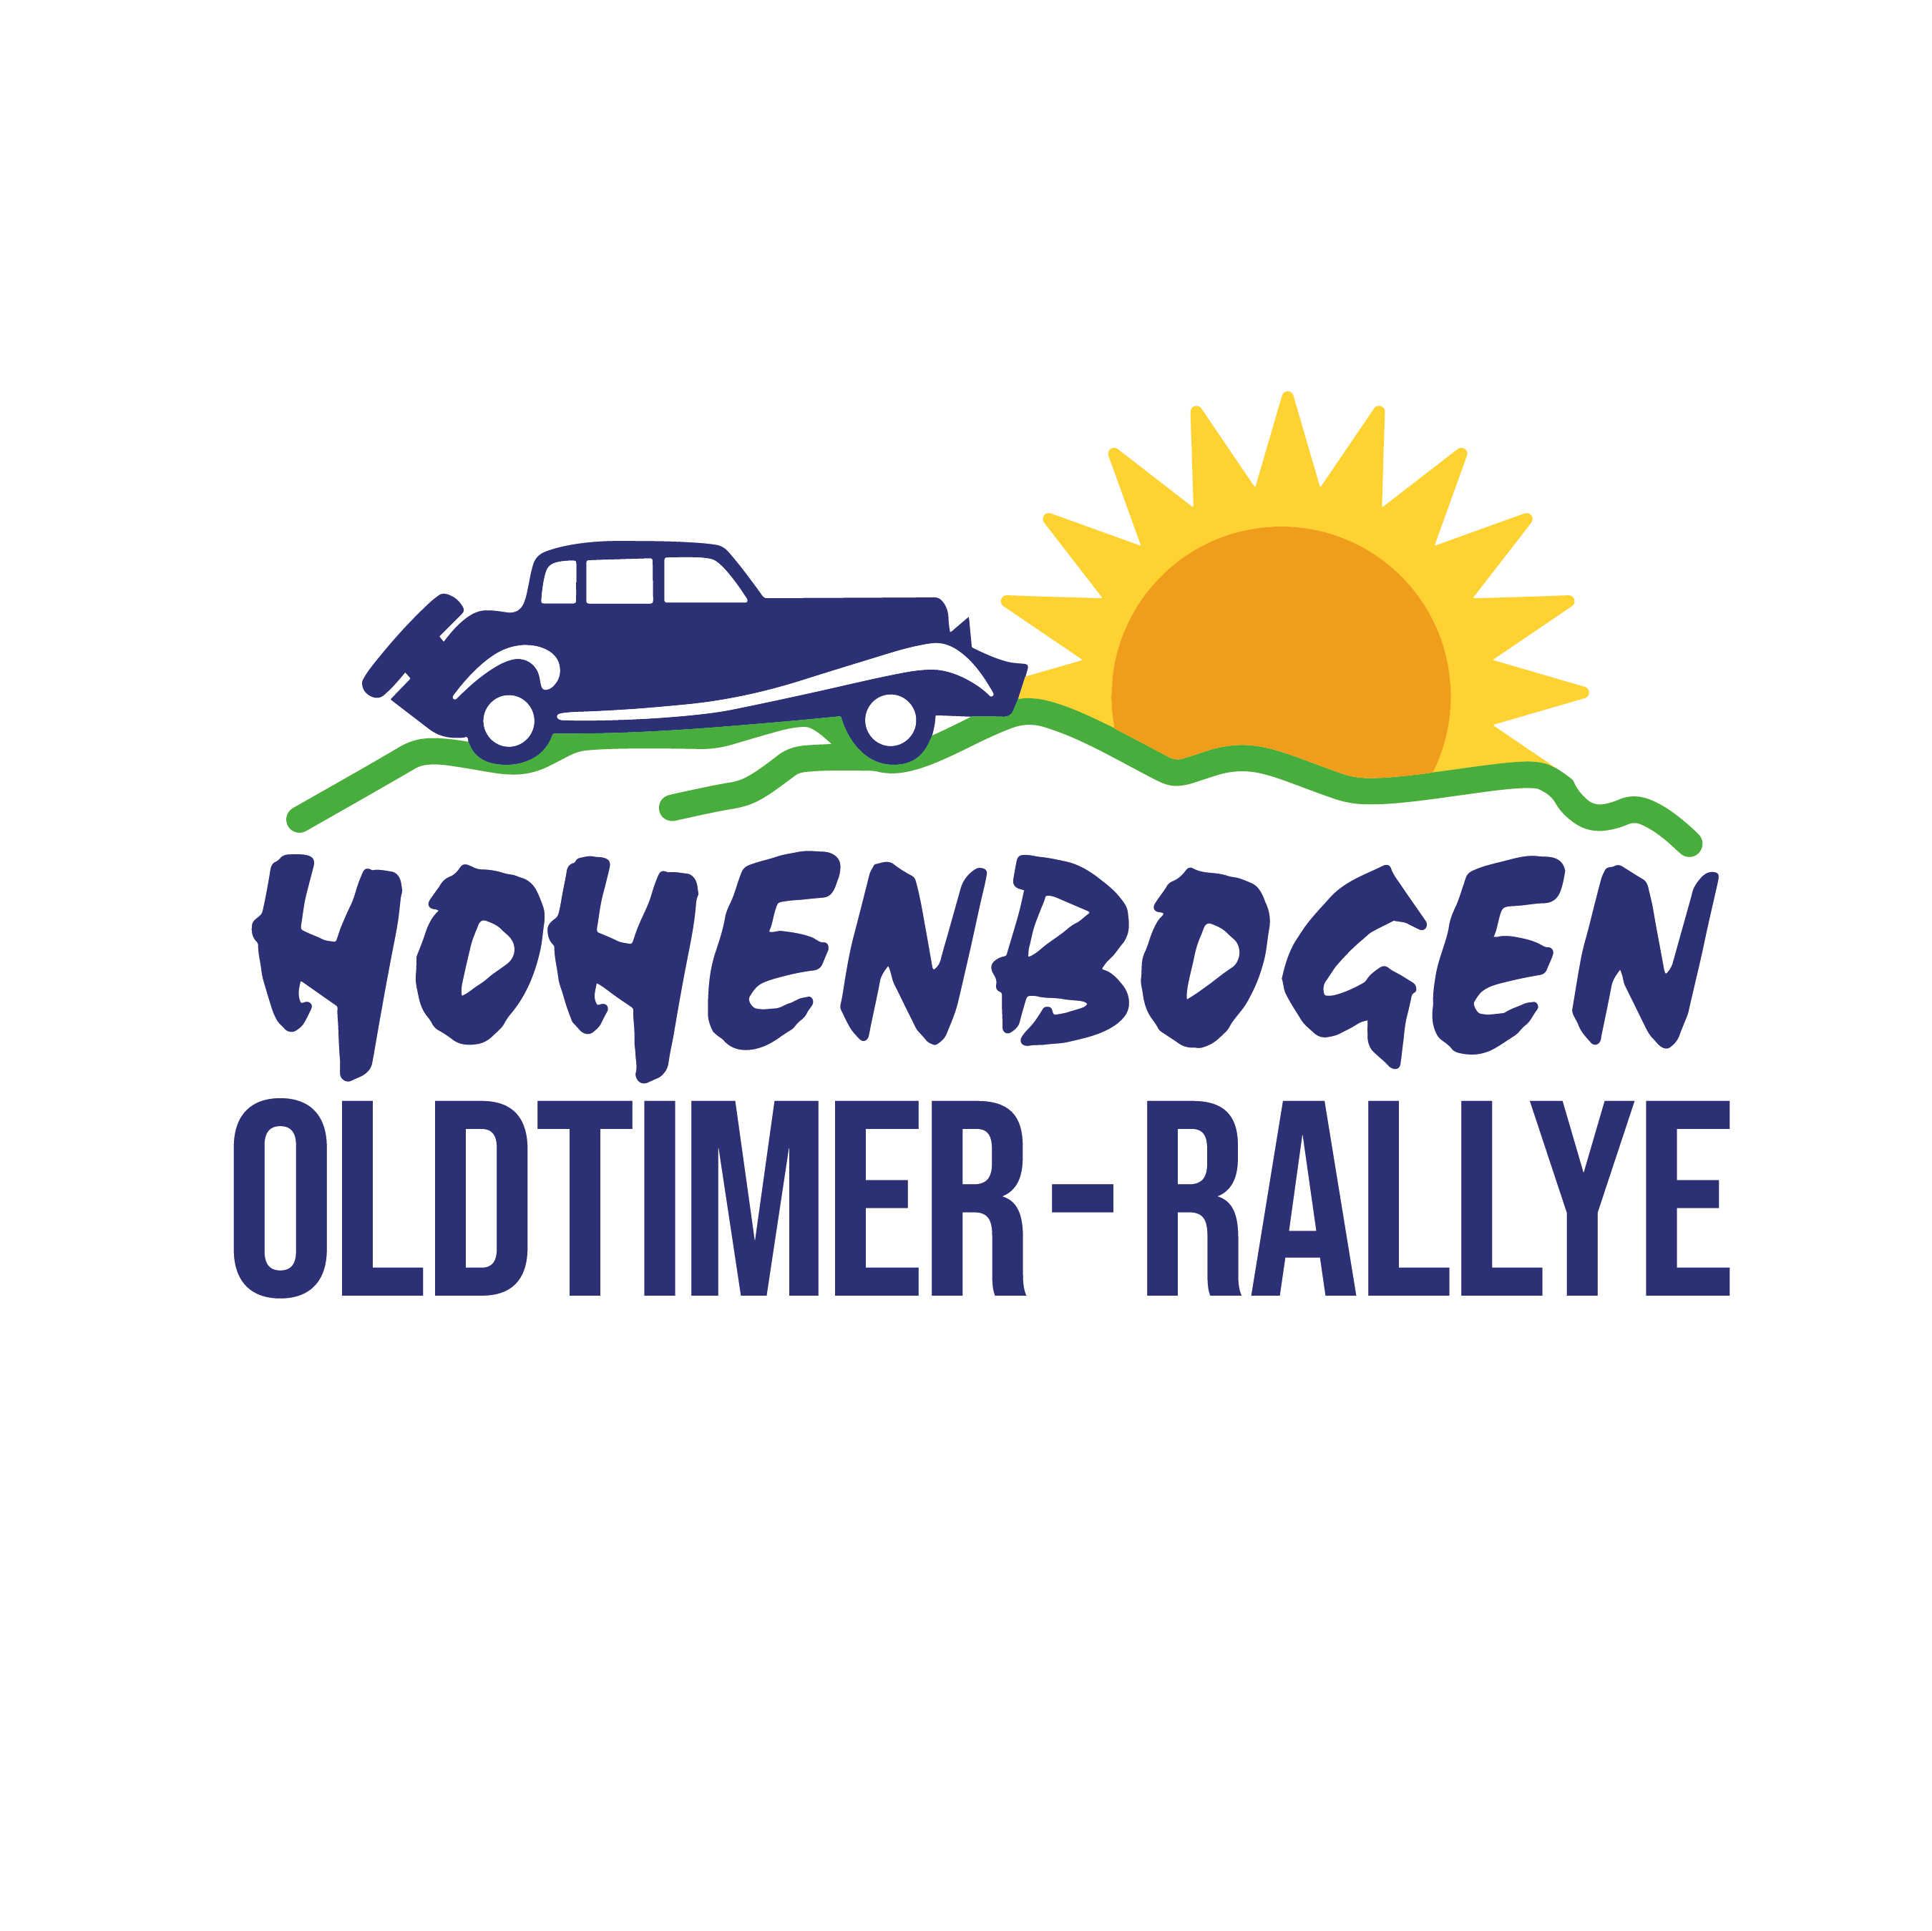 Hohenbogen Oldtimer Rallye